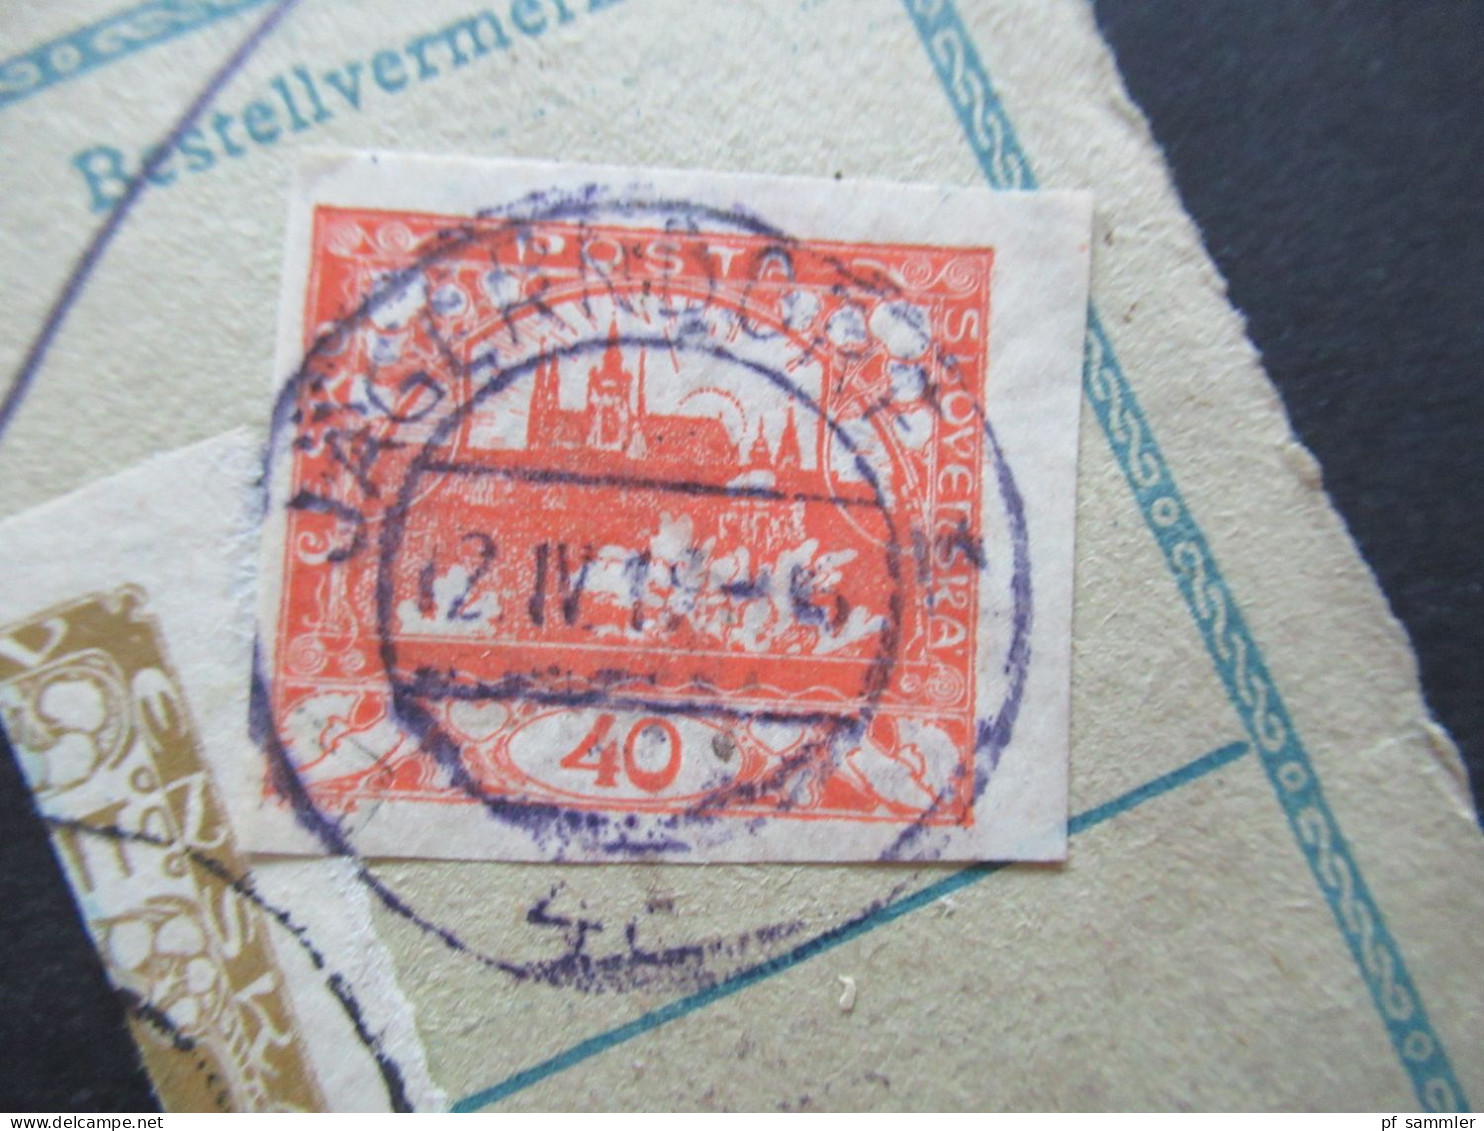 CSR Sudetenland 1919 Briefstück Mit Hradschin Ungezähnt / Mucha MiF Und Violetter Stempel Jägersdorf / 1x Dreierstreifen - Gebraucht